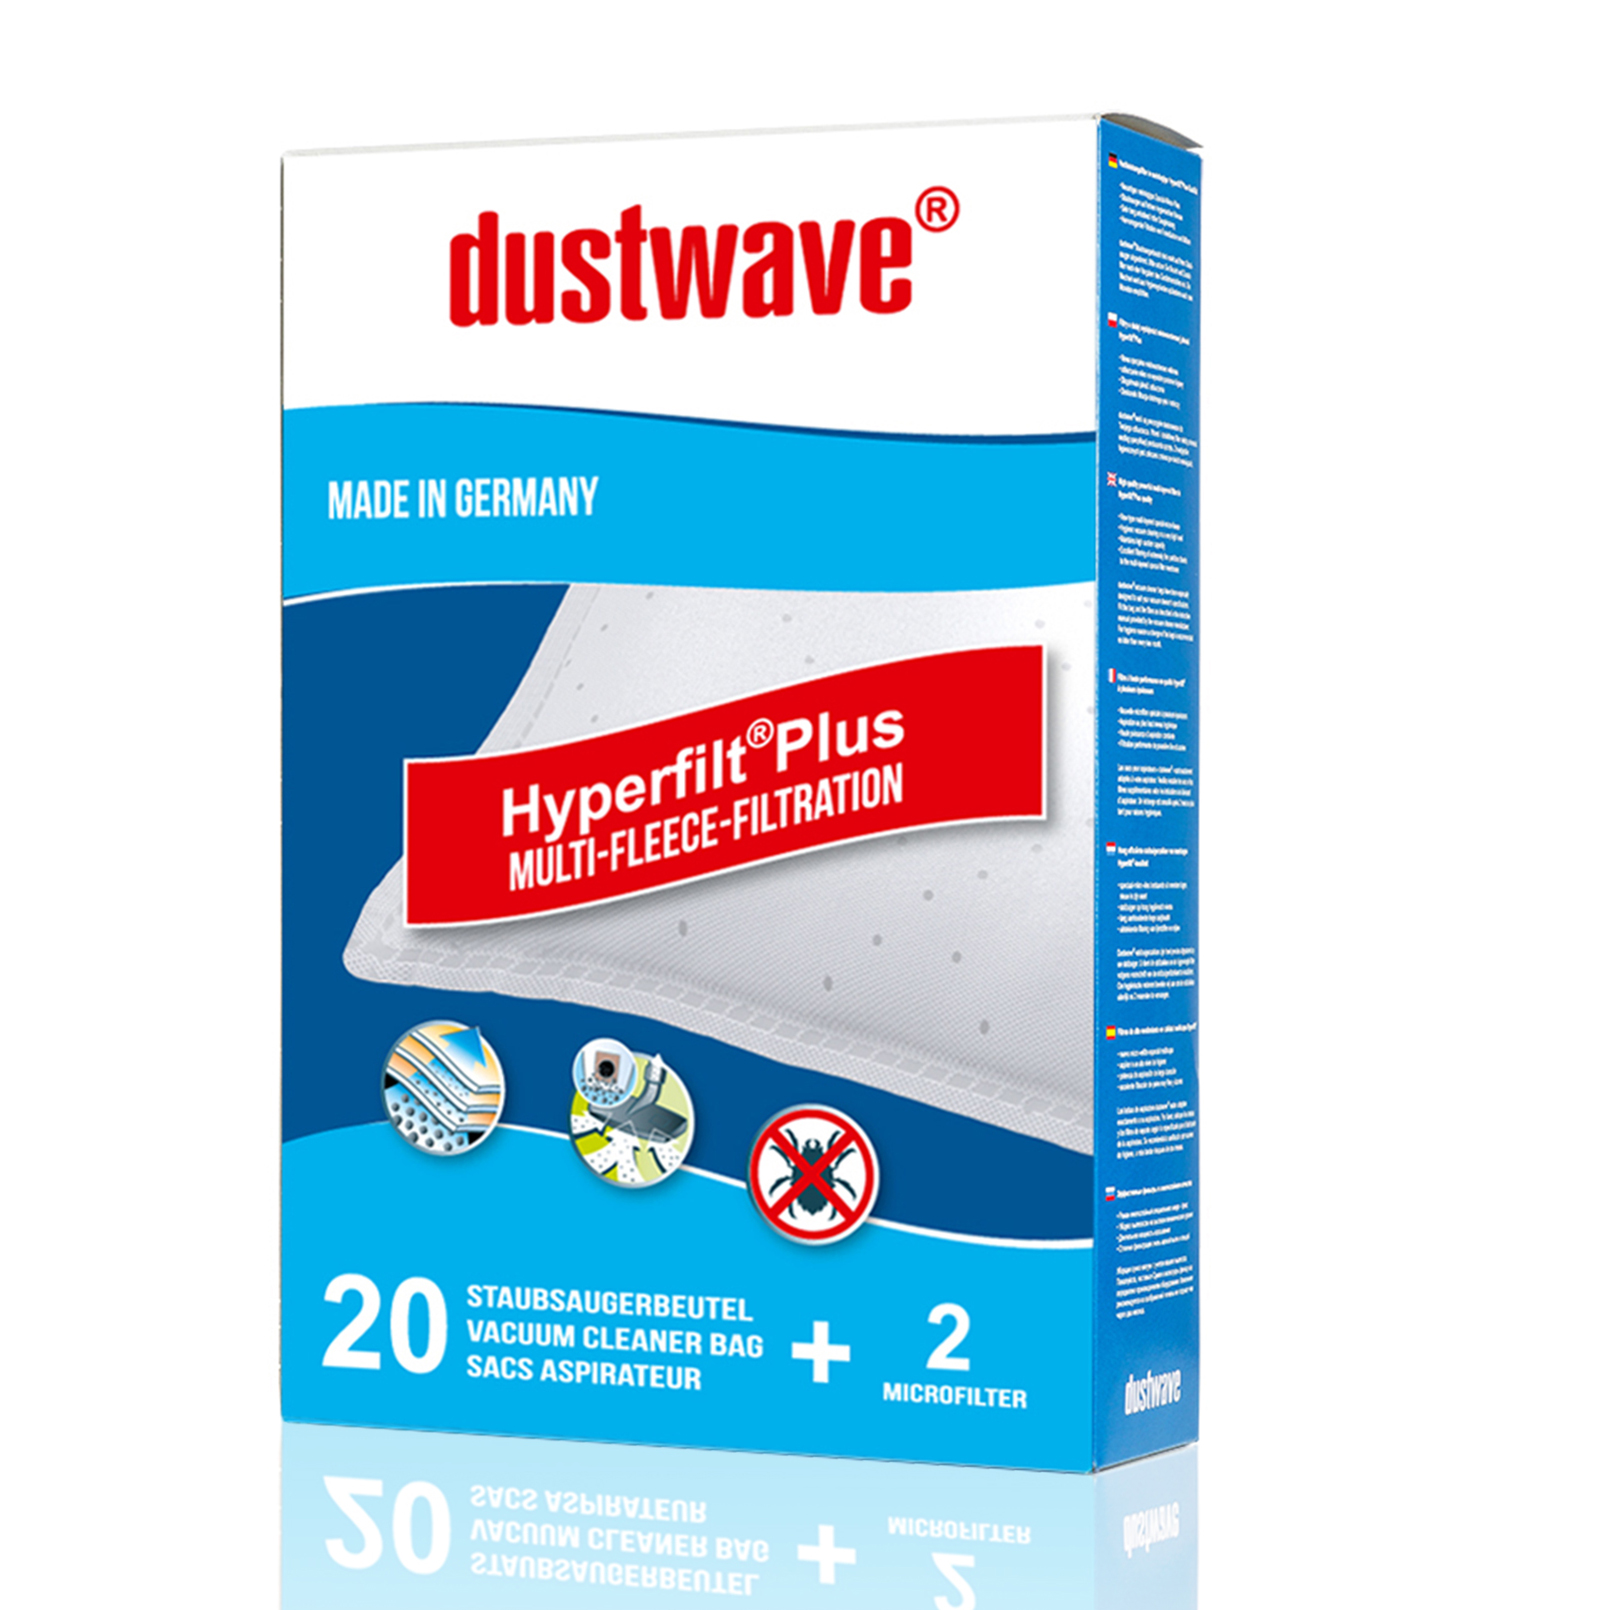 Dustwave® 5 Staubsaugerbeutel für Miele S8380 / S 8380 Medicair - hocheffizient, mehrlagiges Mikrovlies mit Hygieneverschluss - Made in Germany